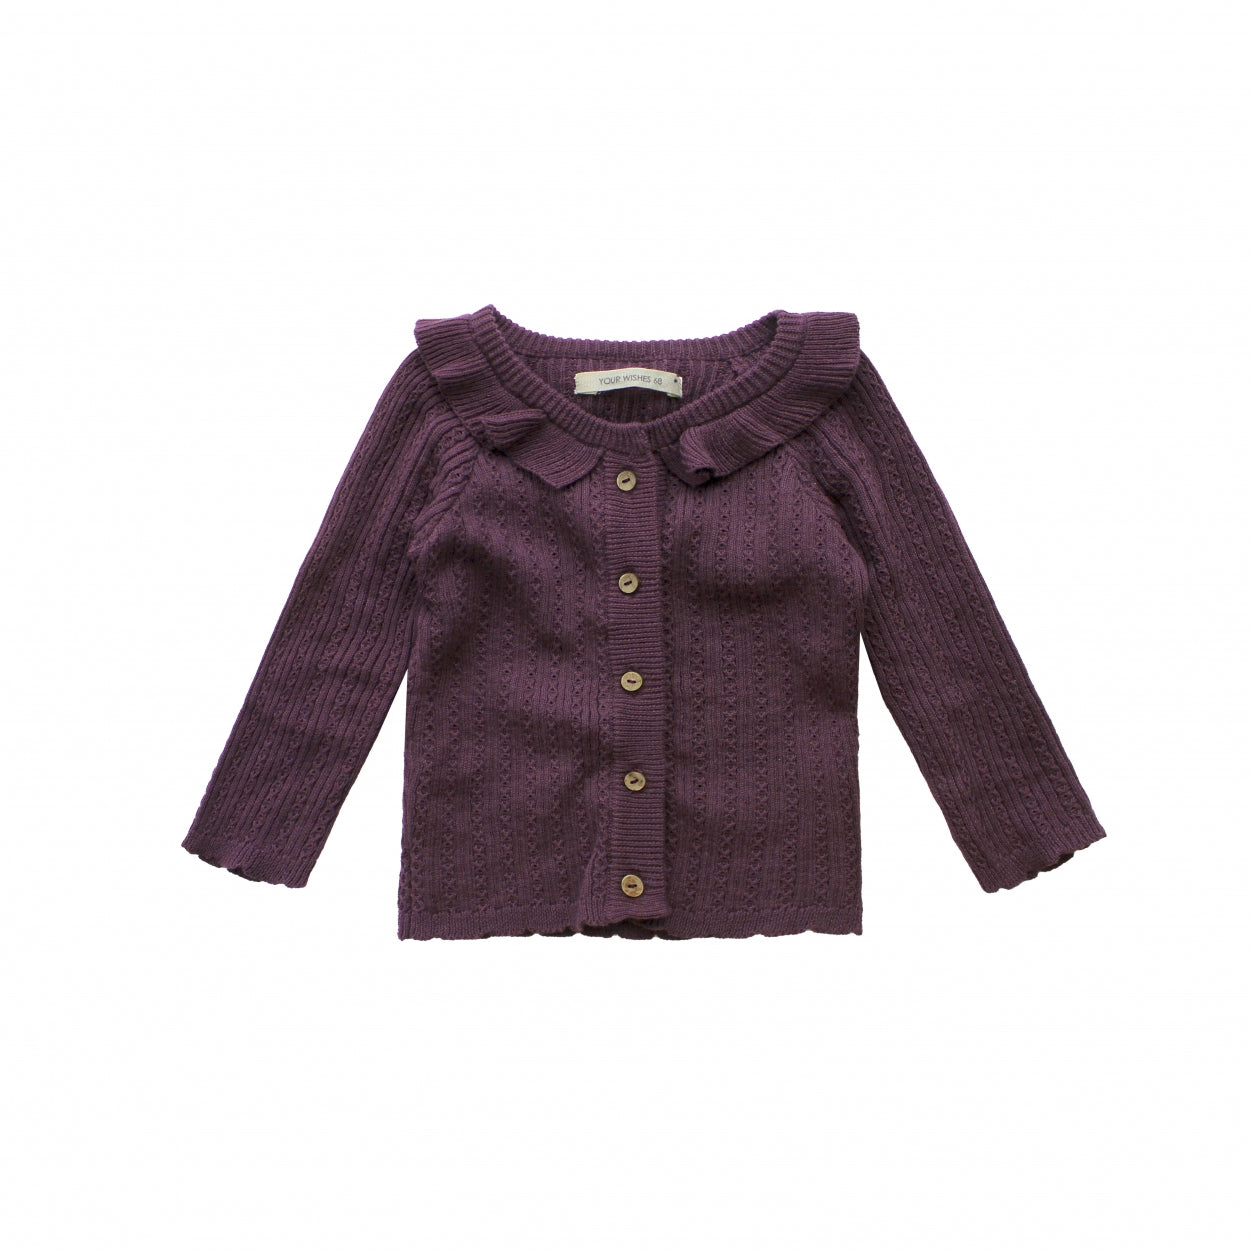 Meisjes Vest Motif Knit  | Maddie van Your Wishes in de kleur Plum Perfect in maat 74.